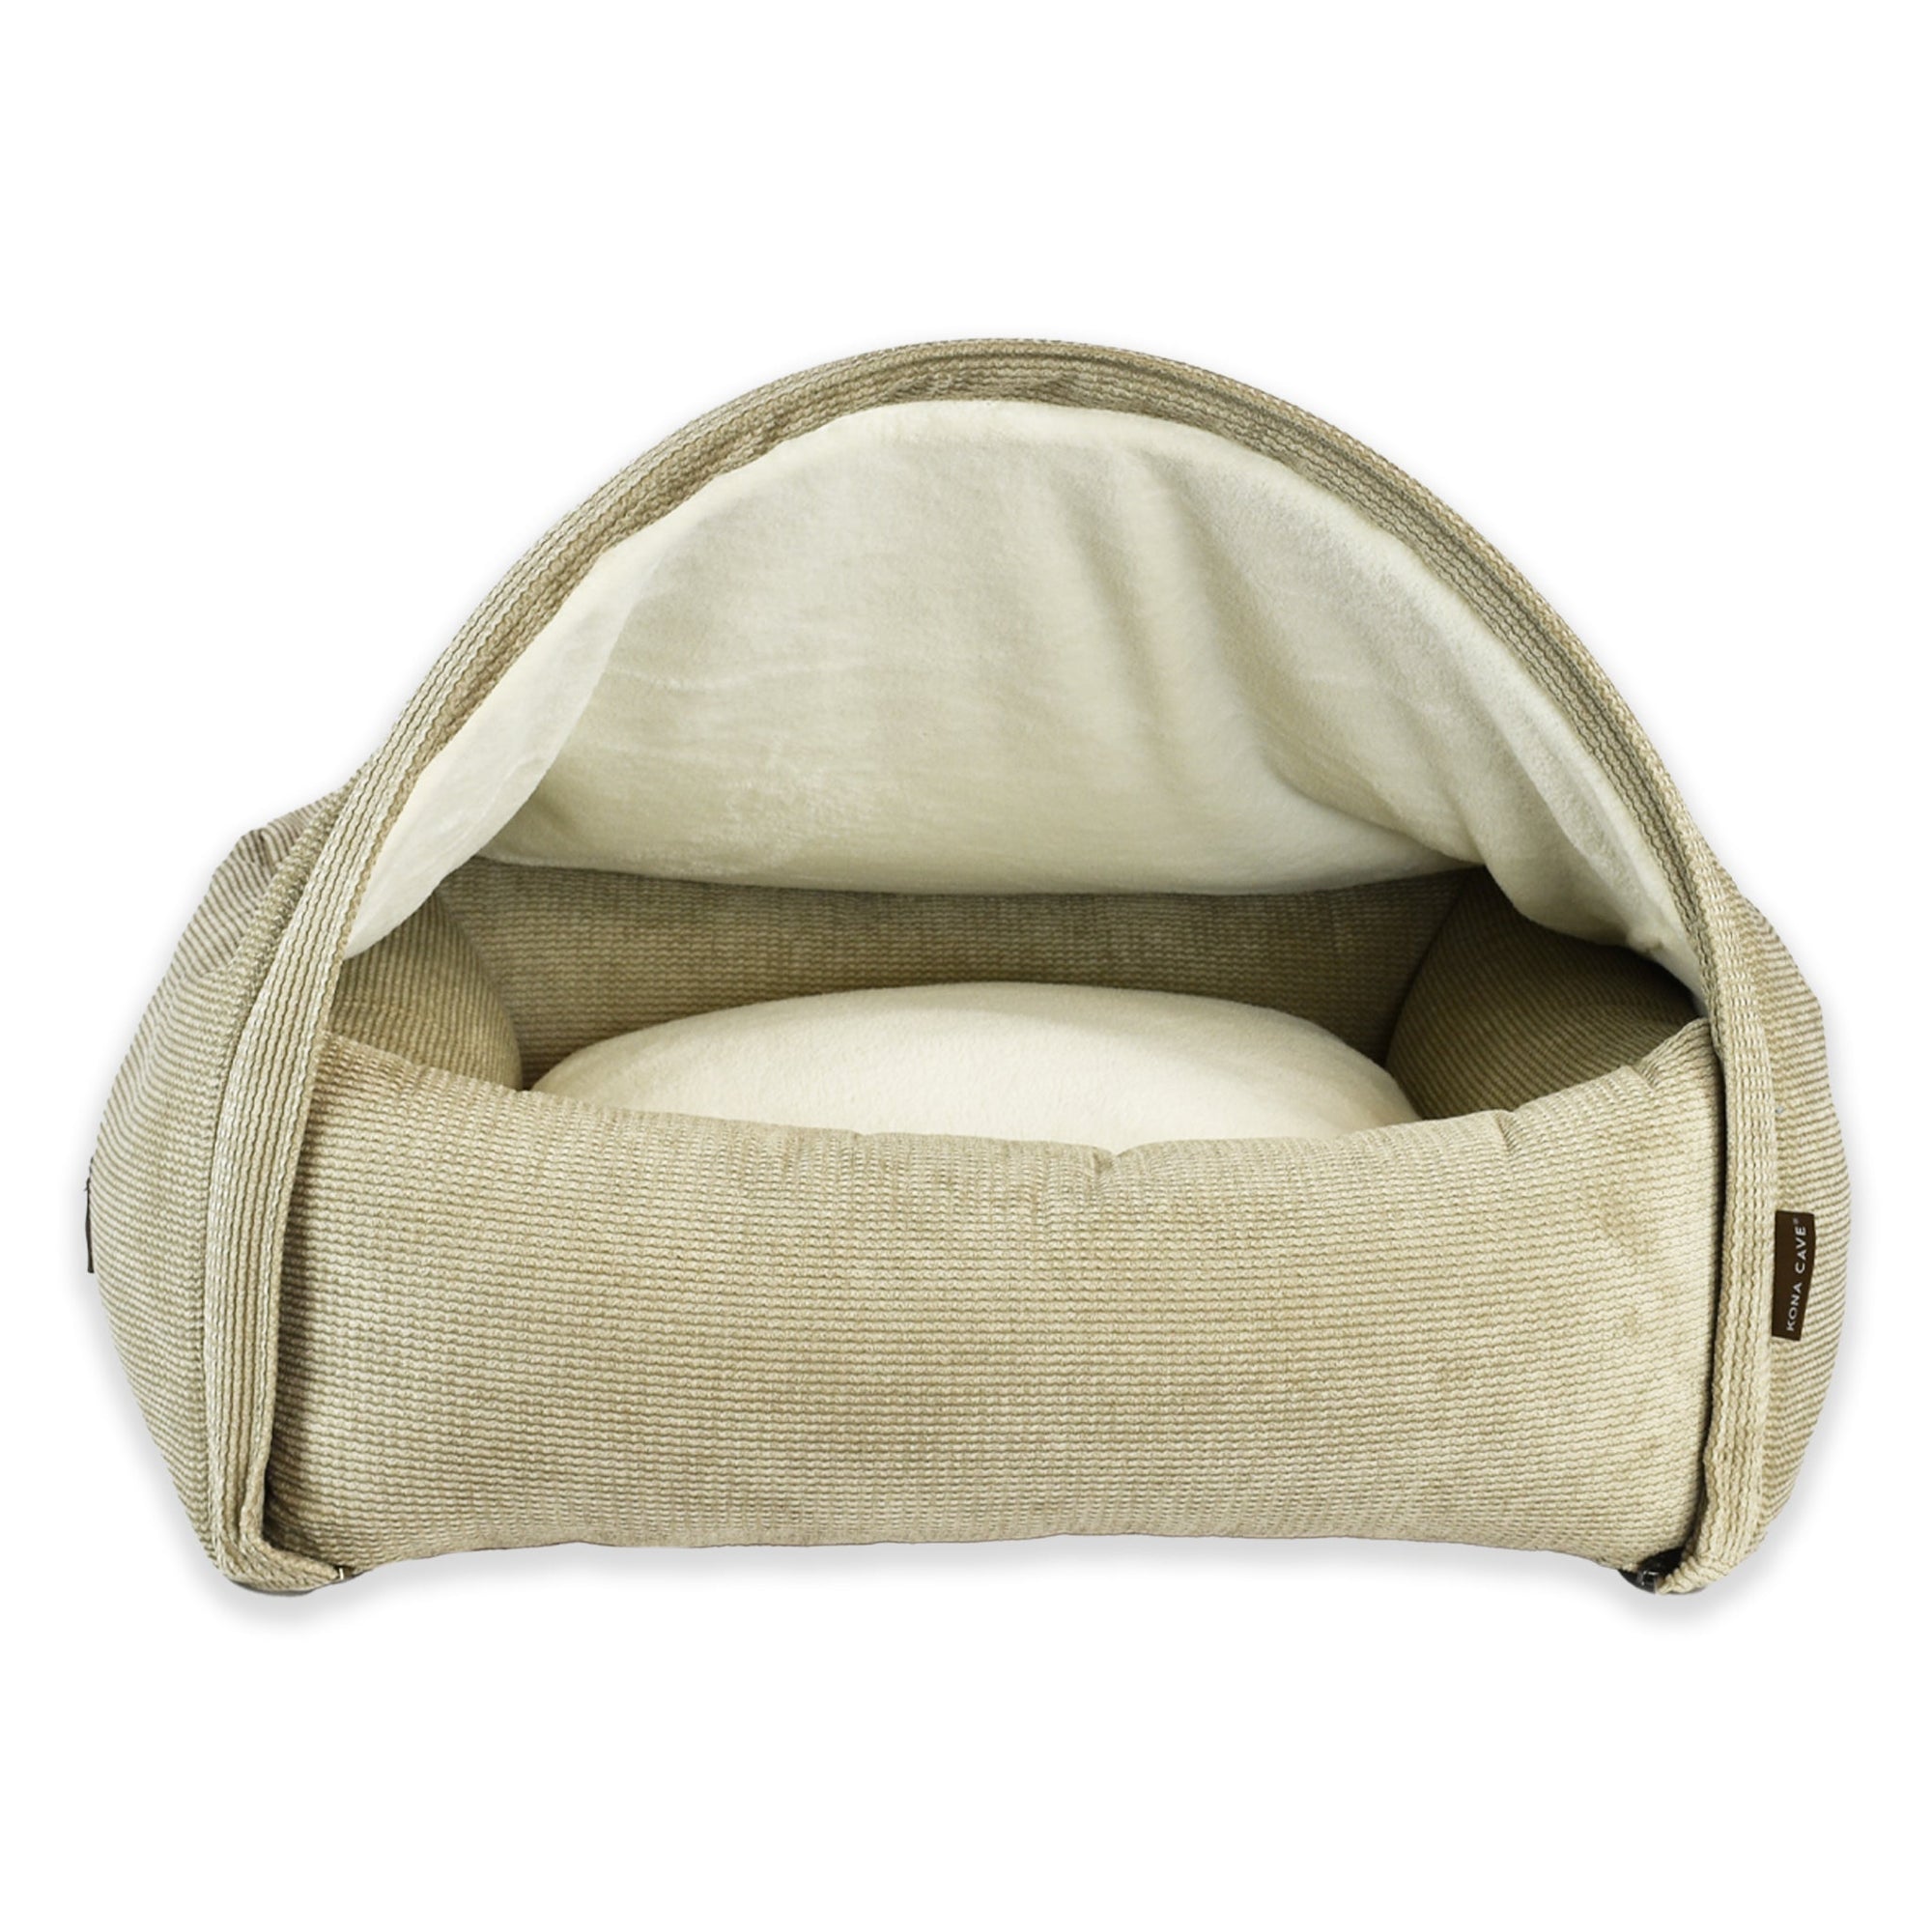 KONA CAVE® Luxus Marke snuggle Vordach Höhle Kuschelbett. Hellbraunes Kordbett für Hunde und Katzen mit abnehmbarem Höhlendach. Waschbar. 